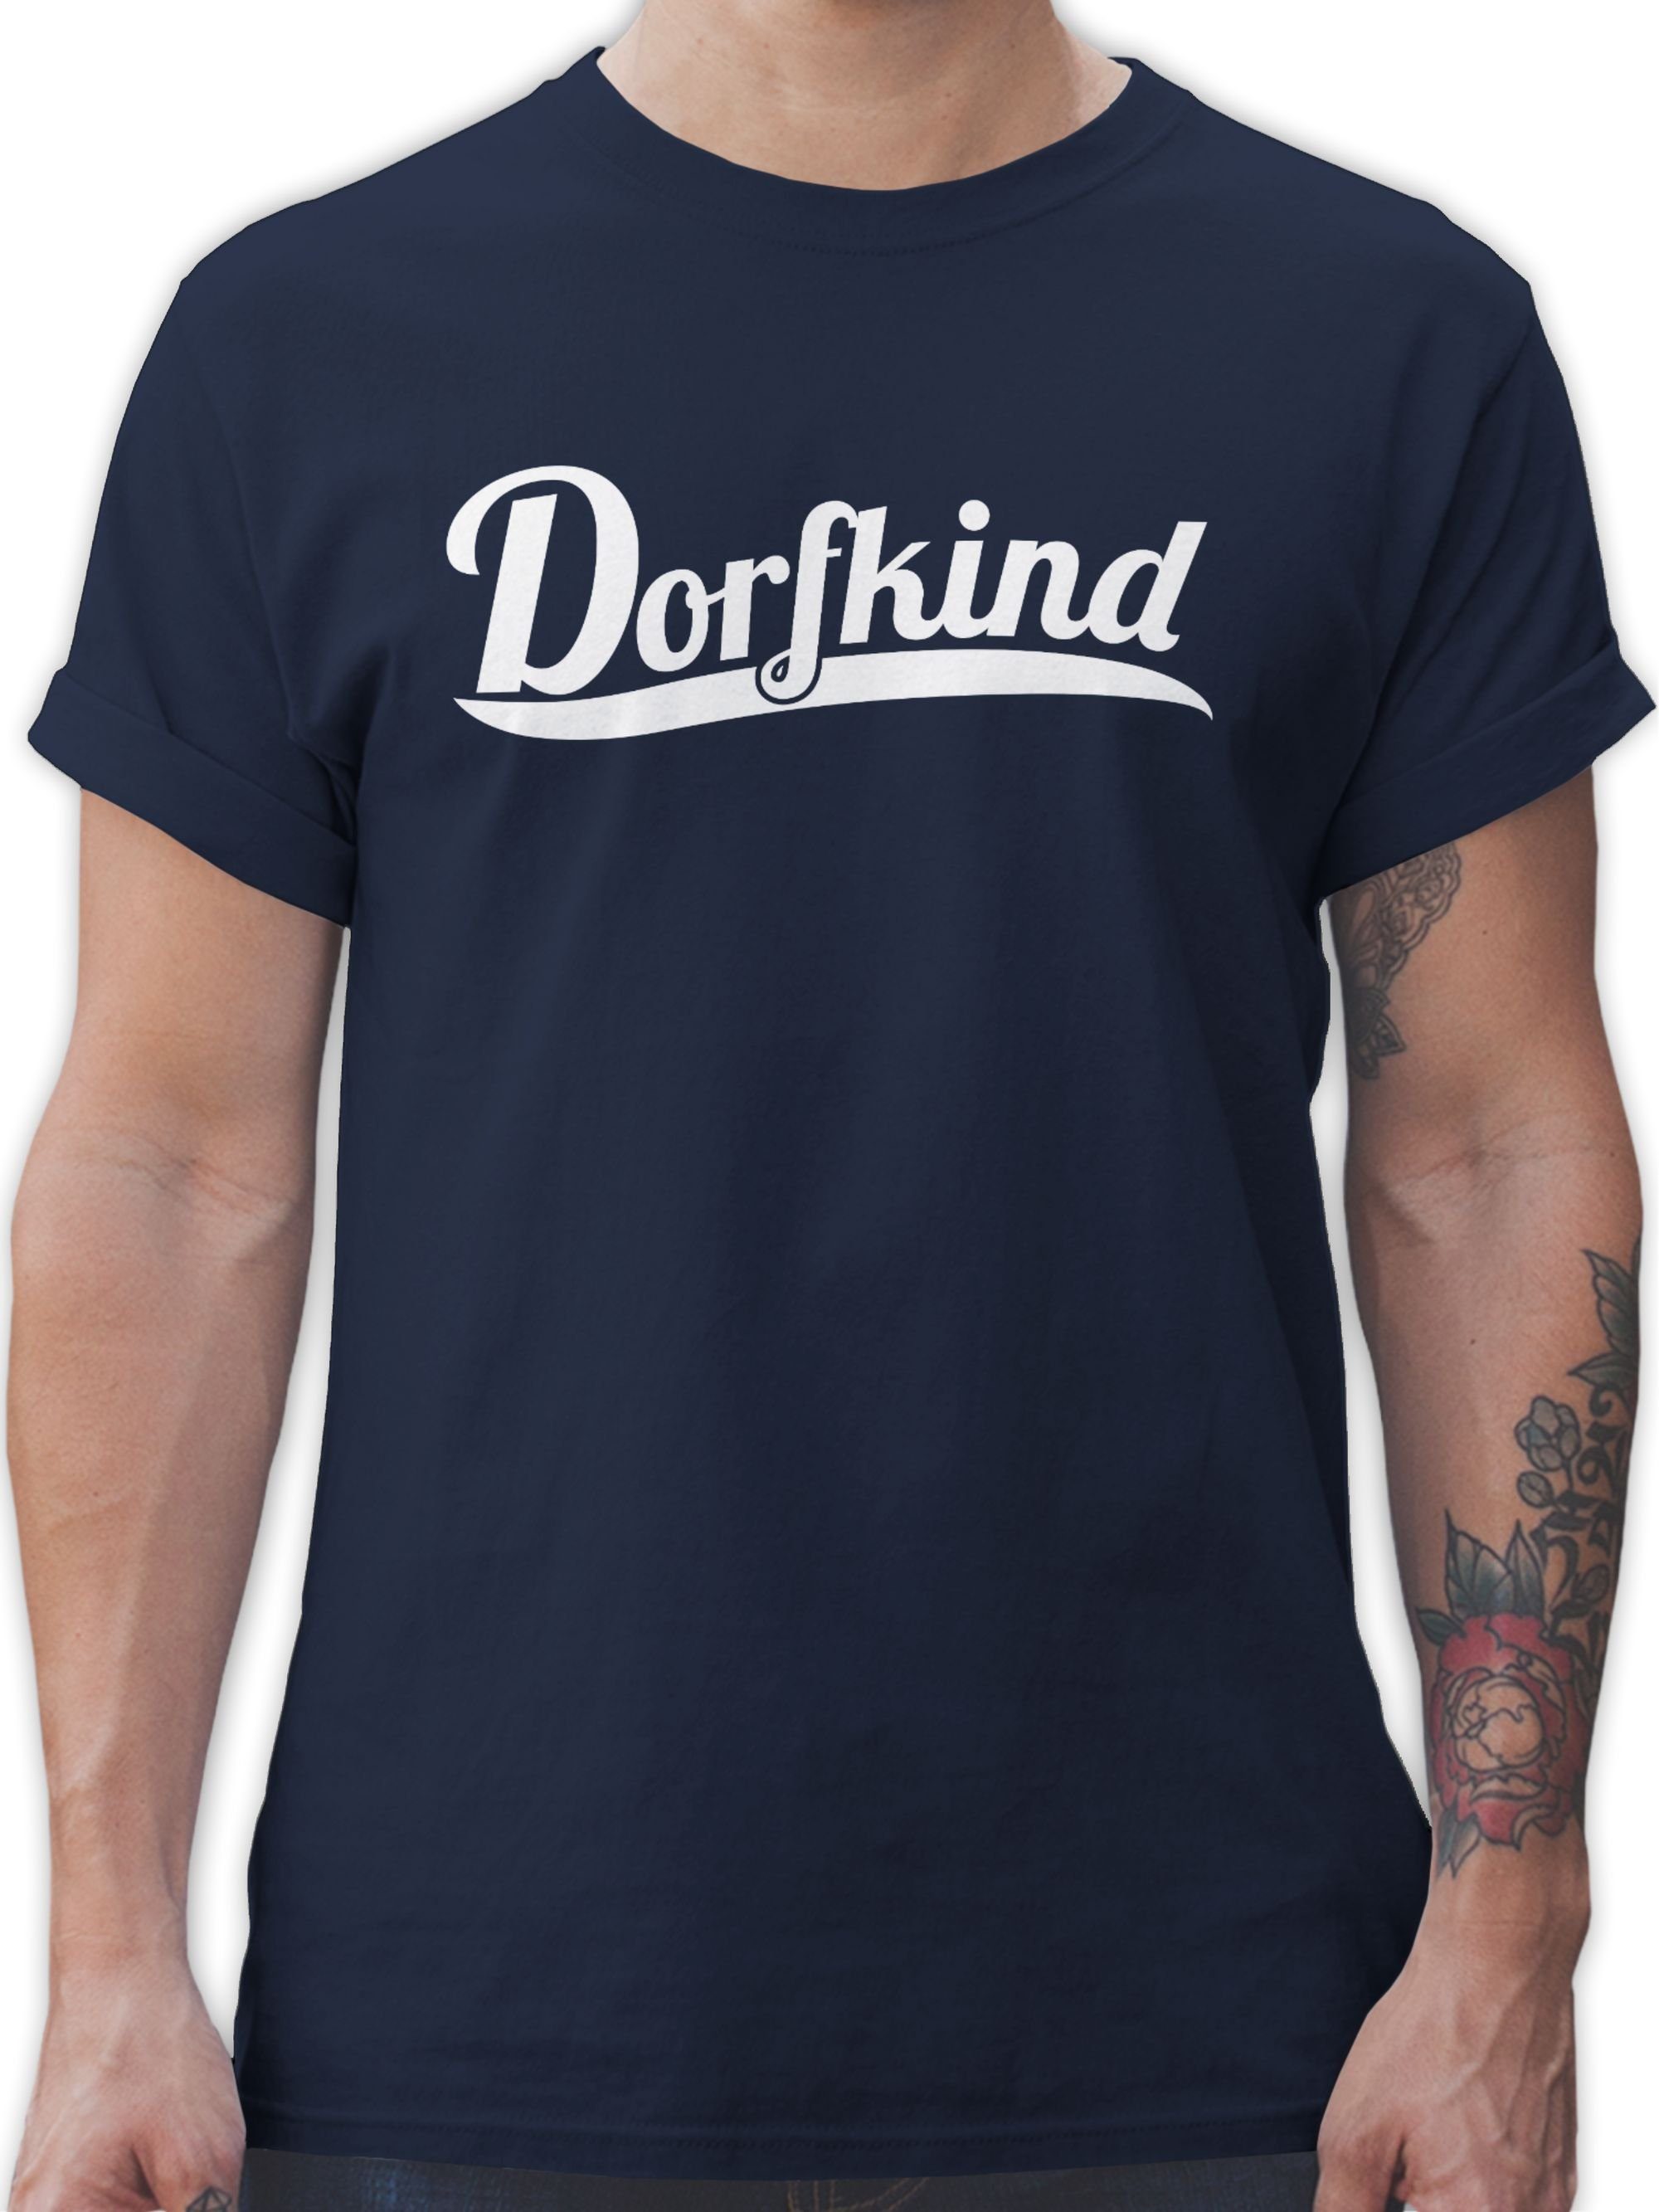 Shirtracer T-Shirt Dorfkind Weiss Sprüche Statement 3 Navy Blau